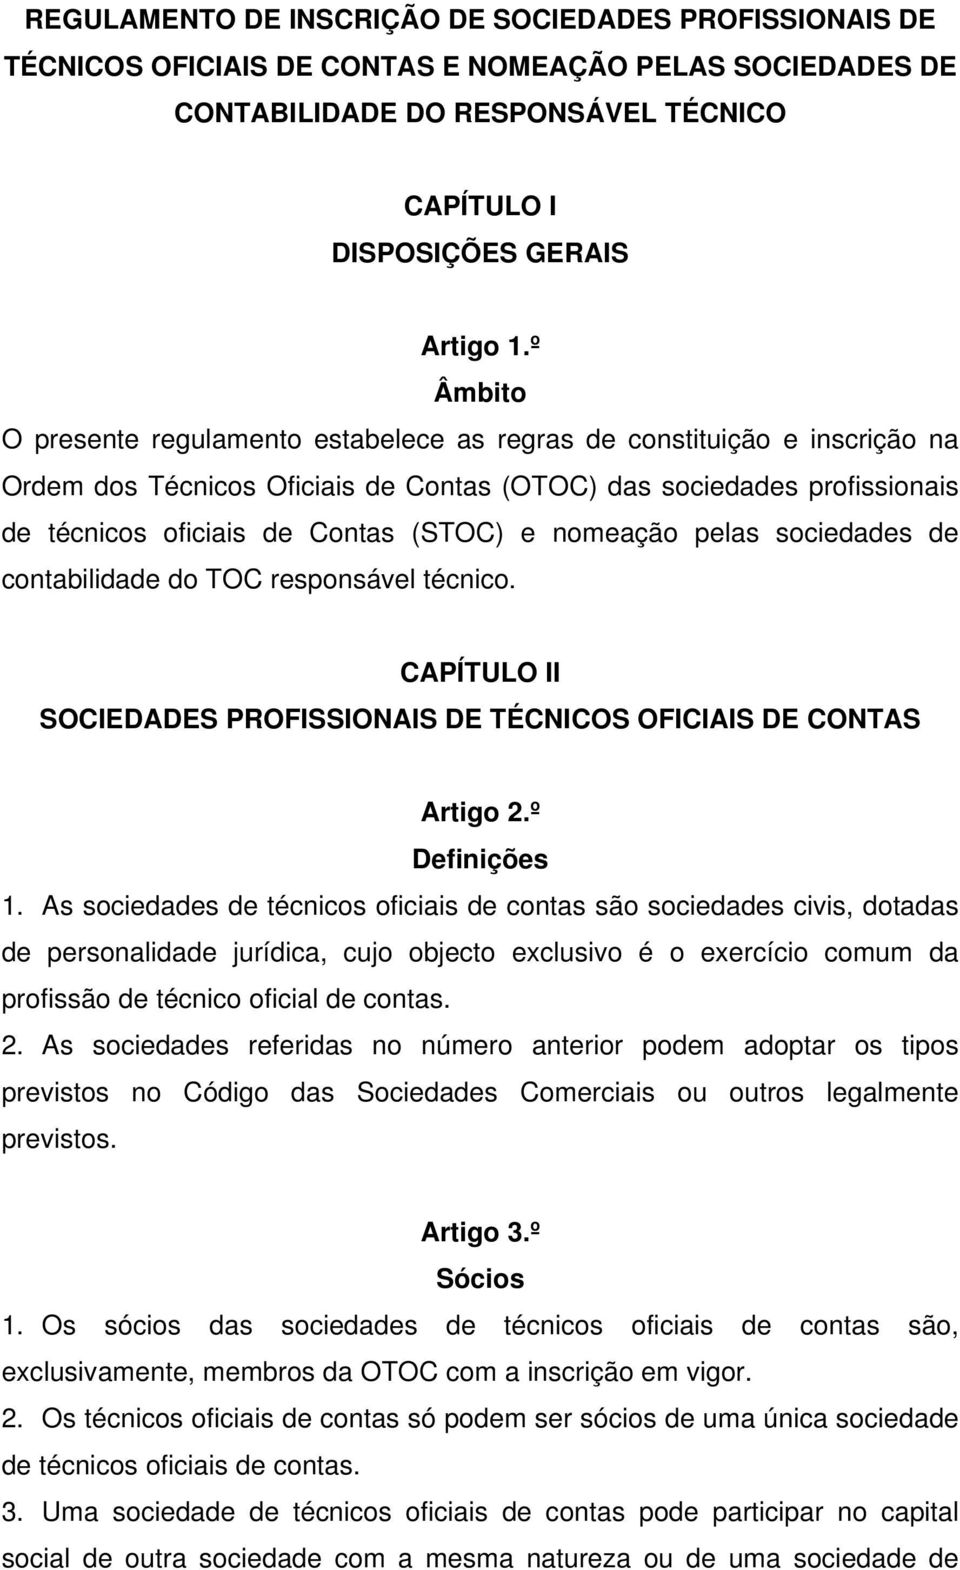 nomeação pelas sociedades de contabilidade do TOC responsável técnico. CAPÍTULO II SOCIEDADES PROFISSIONAIS DE TÉCNICOS OFICIAIS DE CONTAS Artigo 2.º Definições 1.